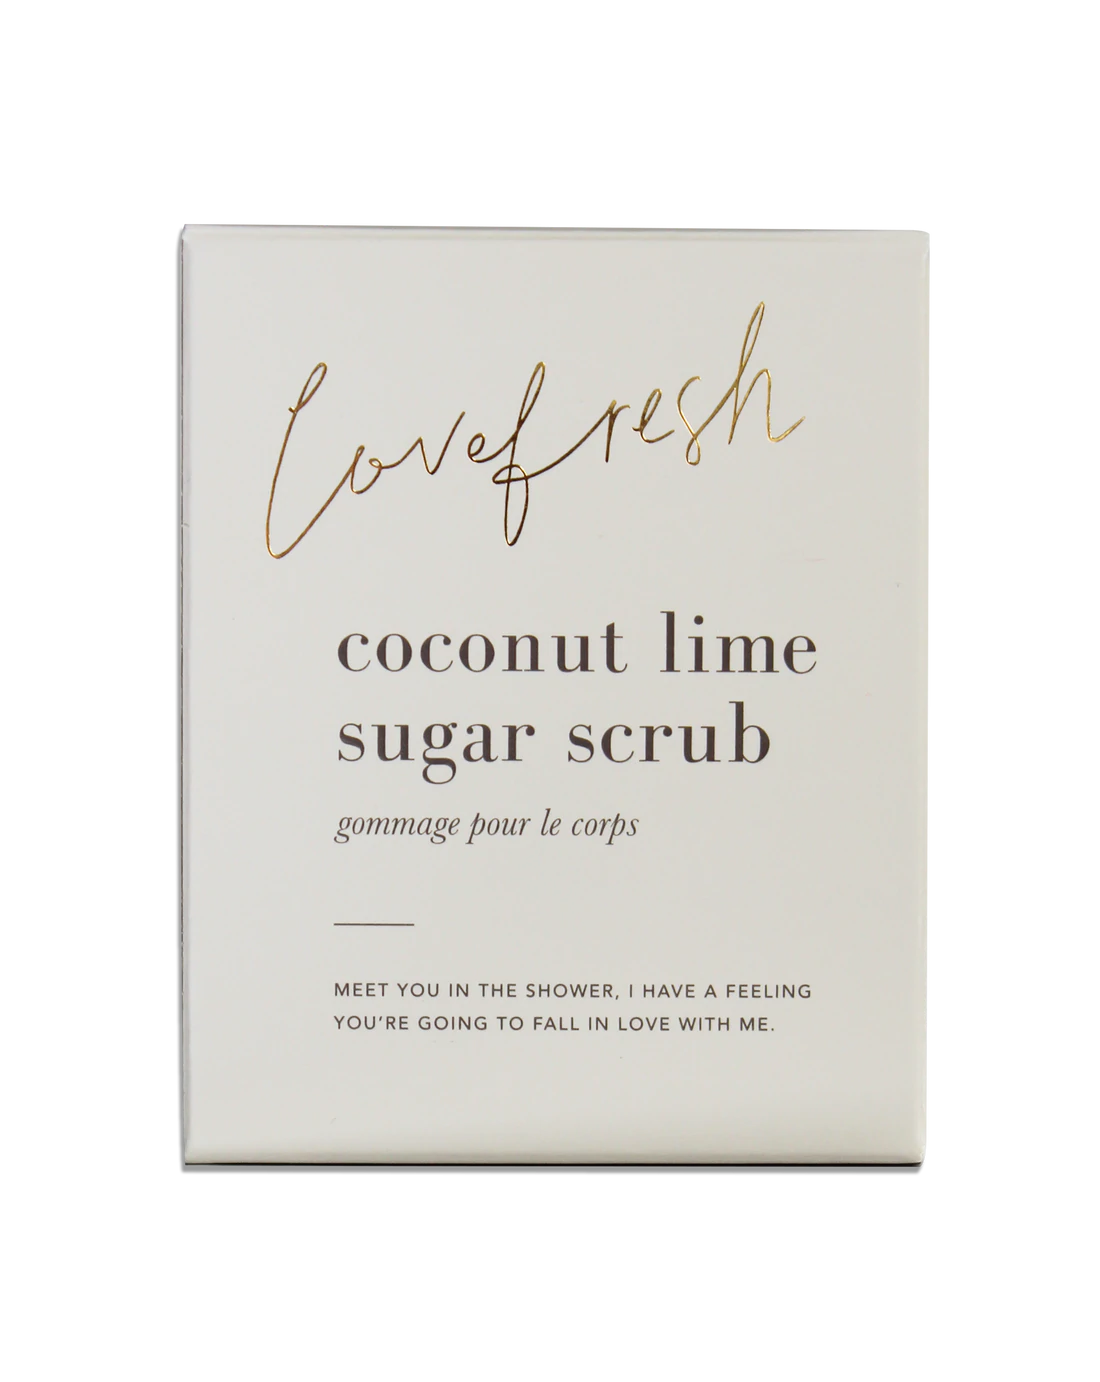 Exfoliating Sugar Scrub - Coconut Lime